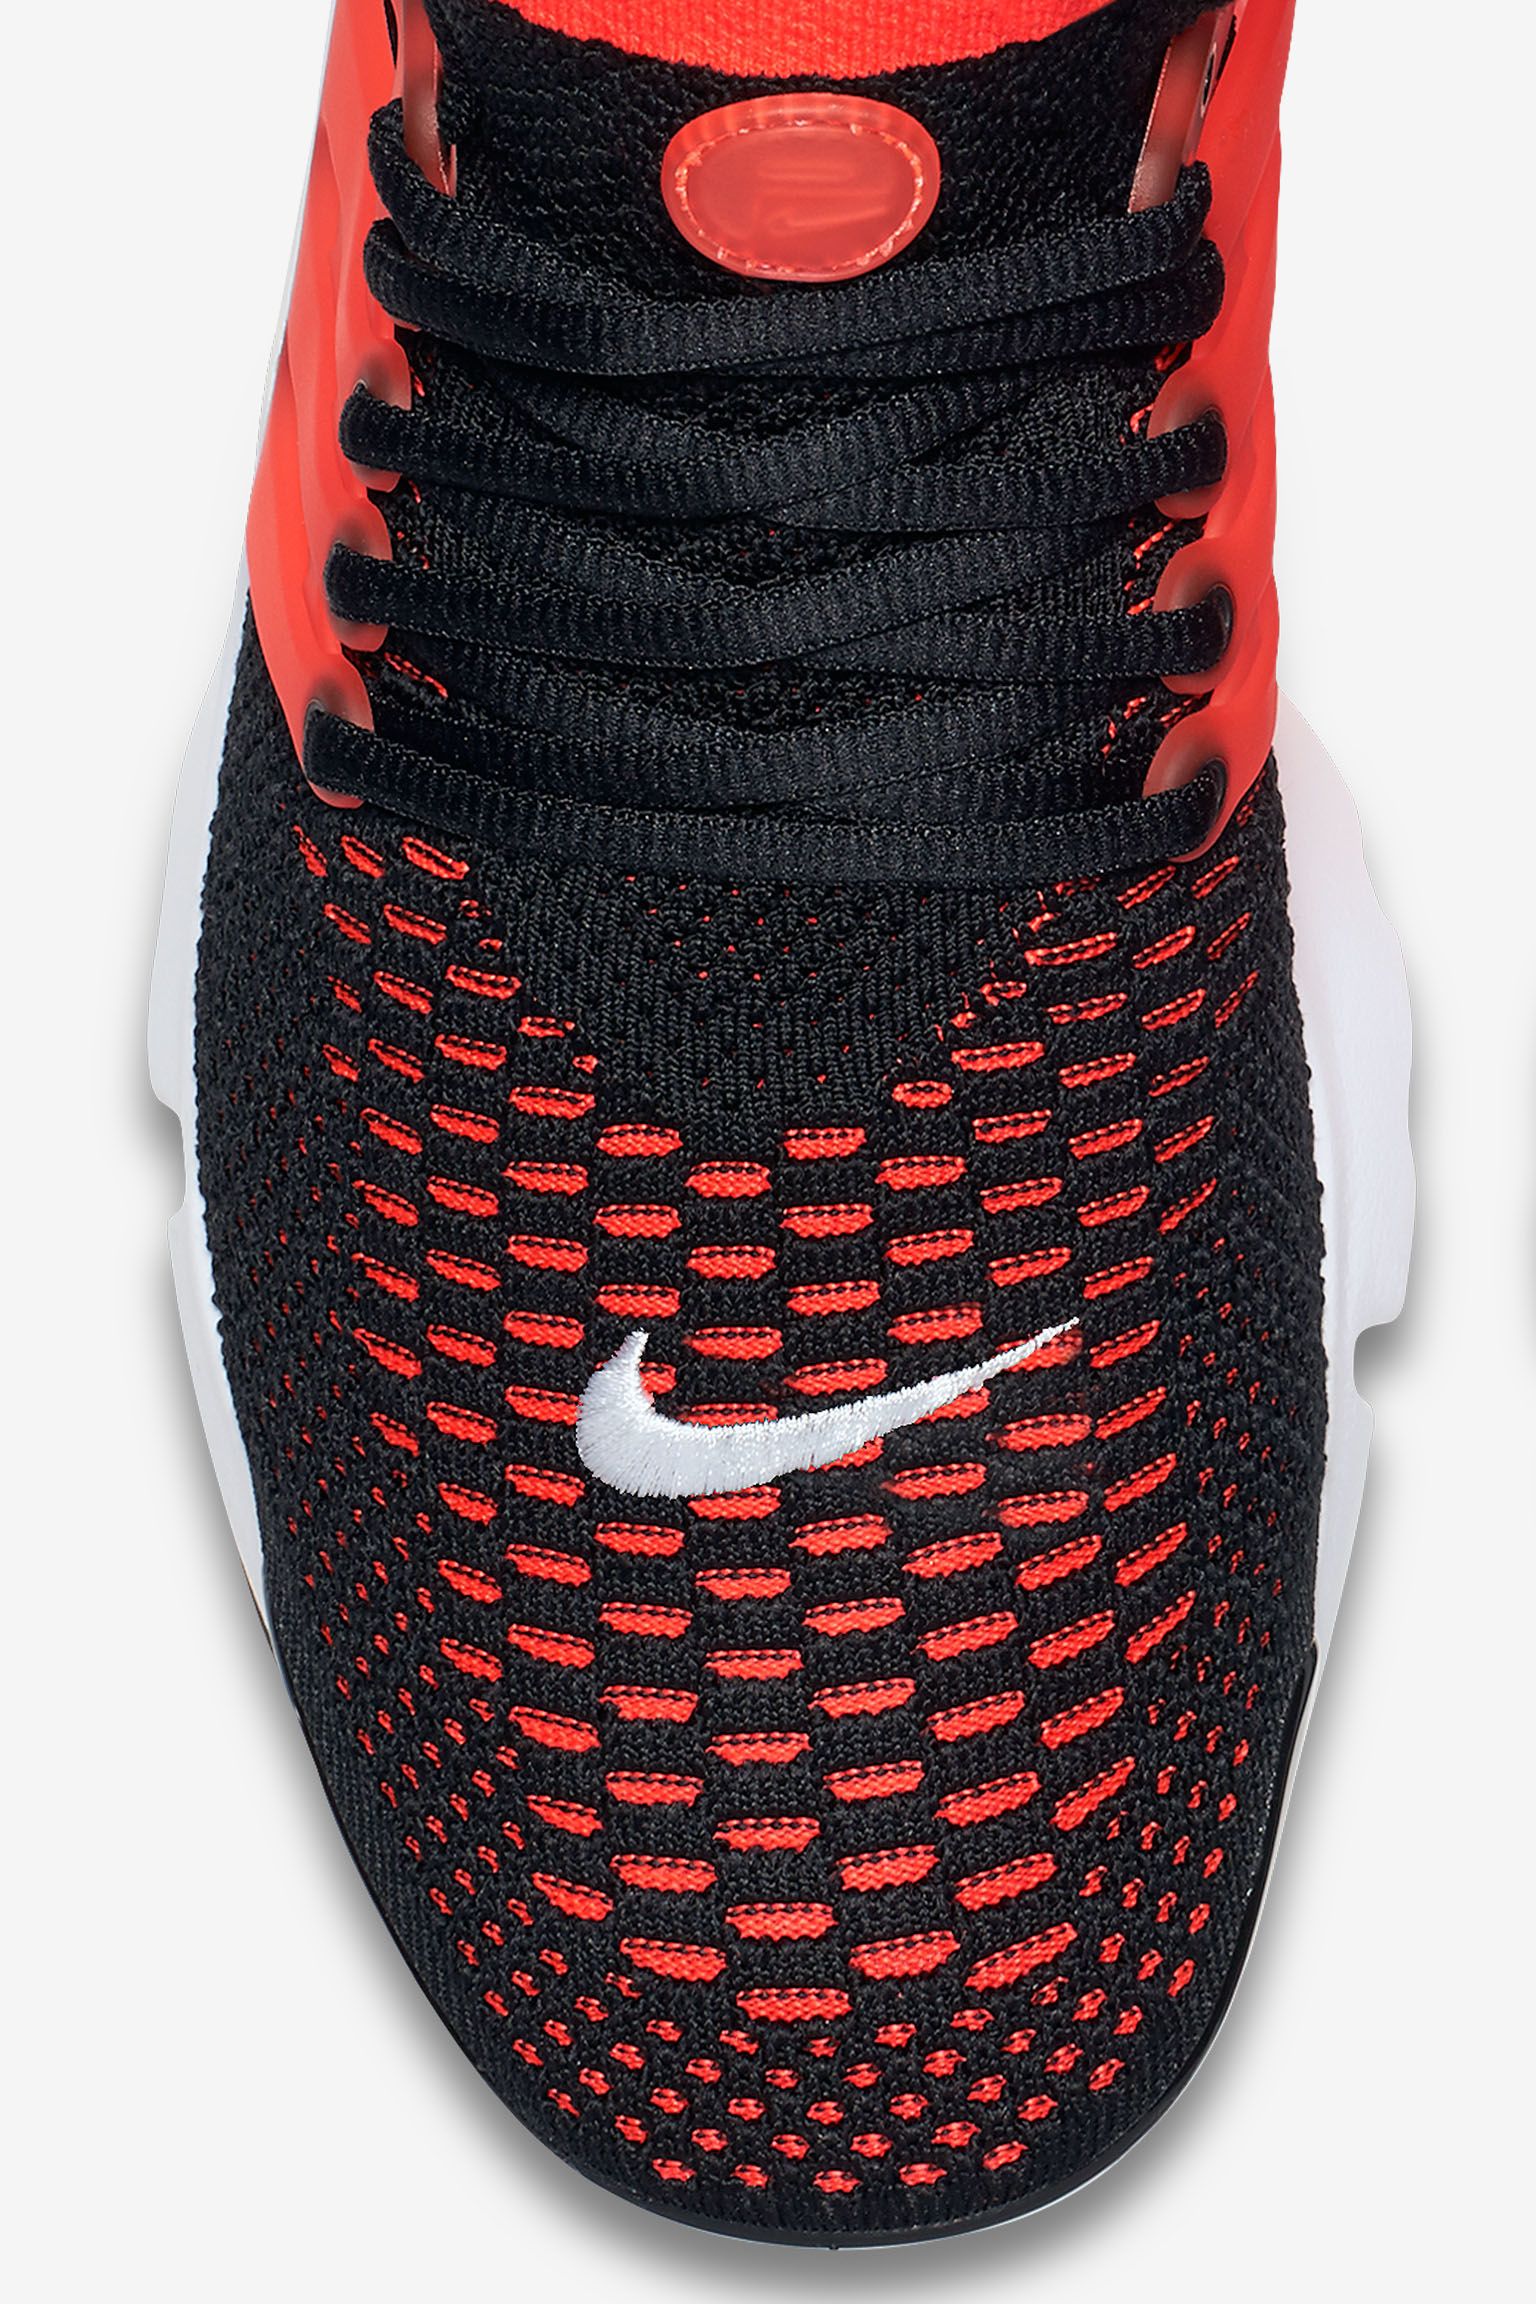 apaciguar Soltero preposición Nike Air Presto Ultra Flyknit 'Bright Crimson' Release Date. Nike SNKRS